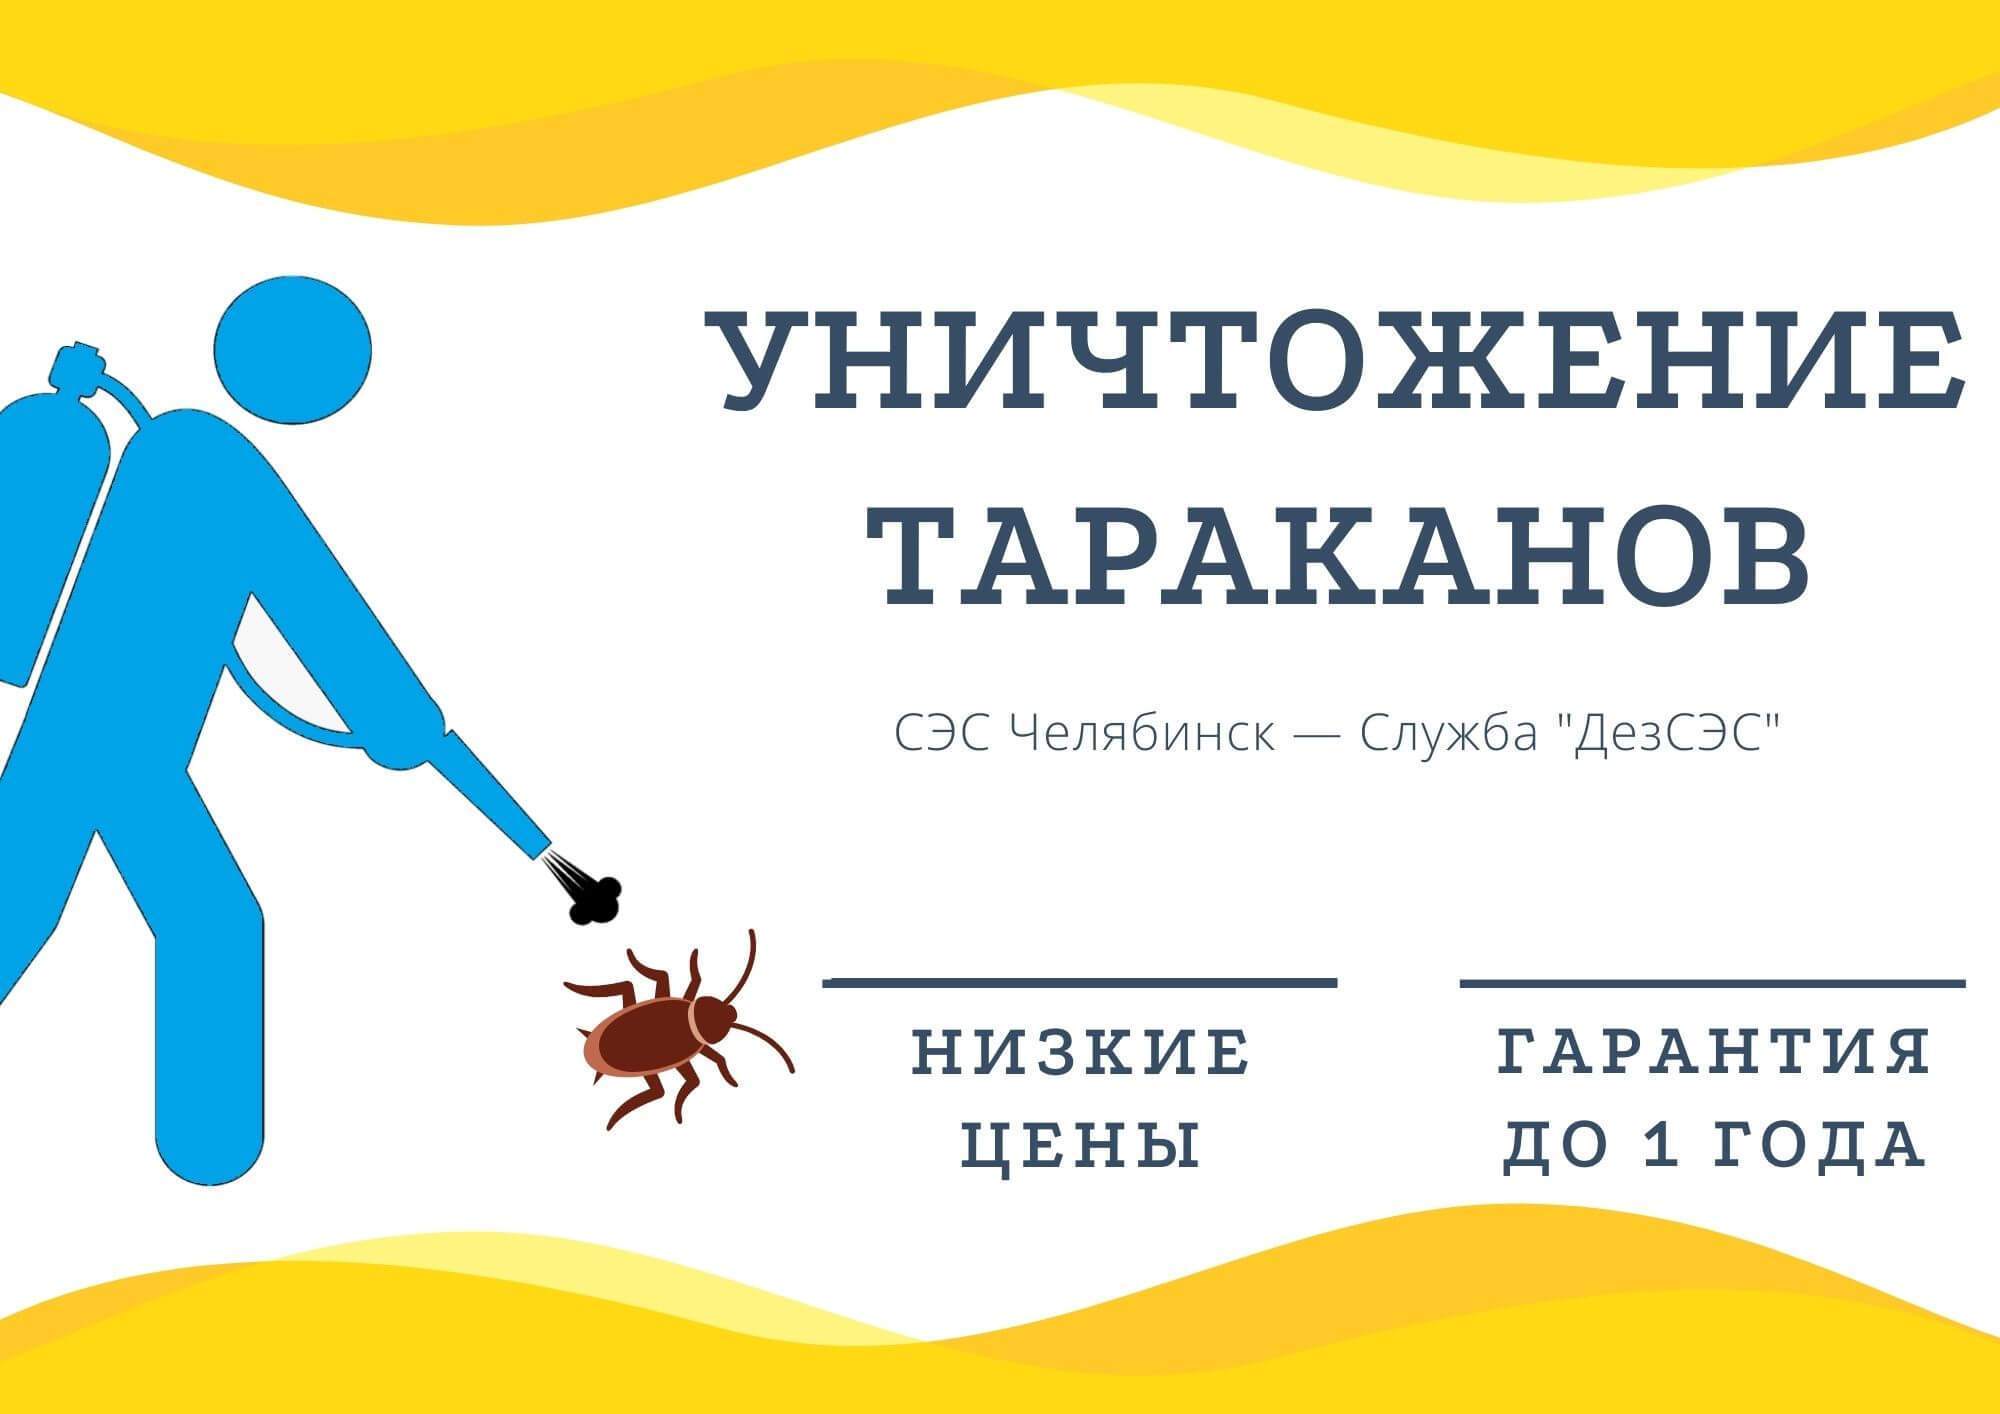 Уничтожение тараканов Челябинск - цены и гарантия